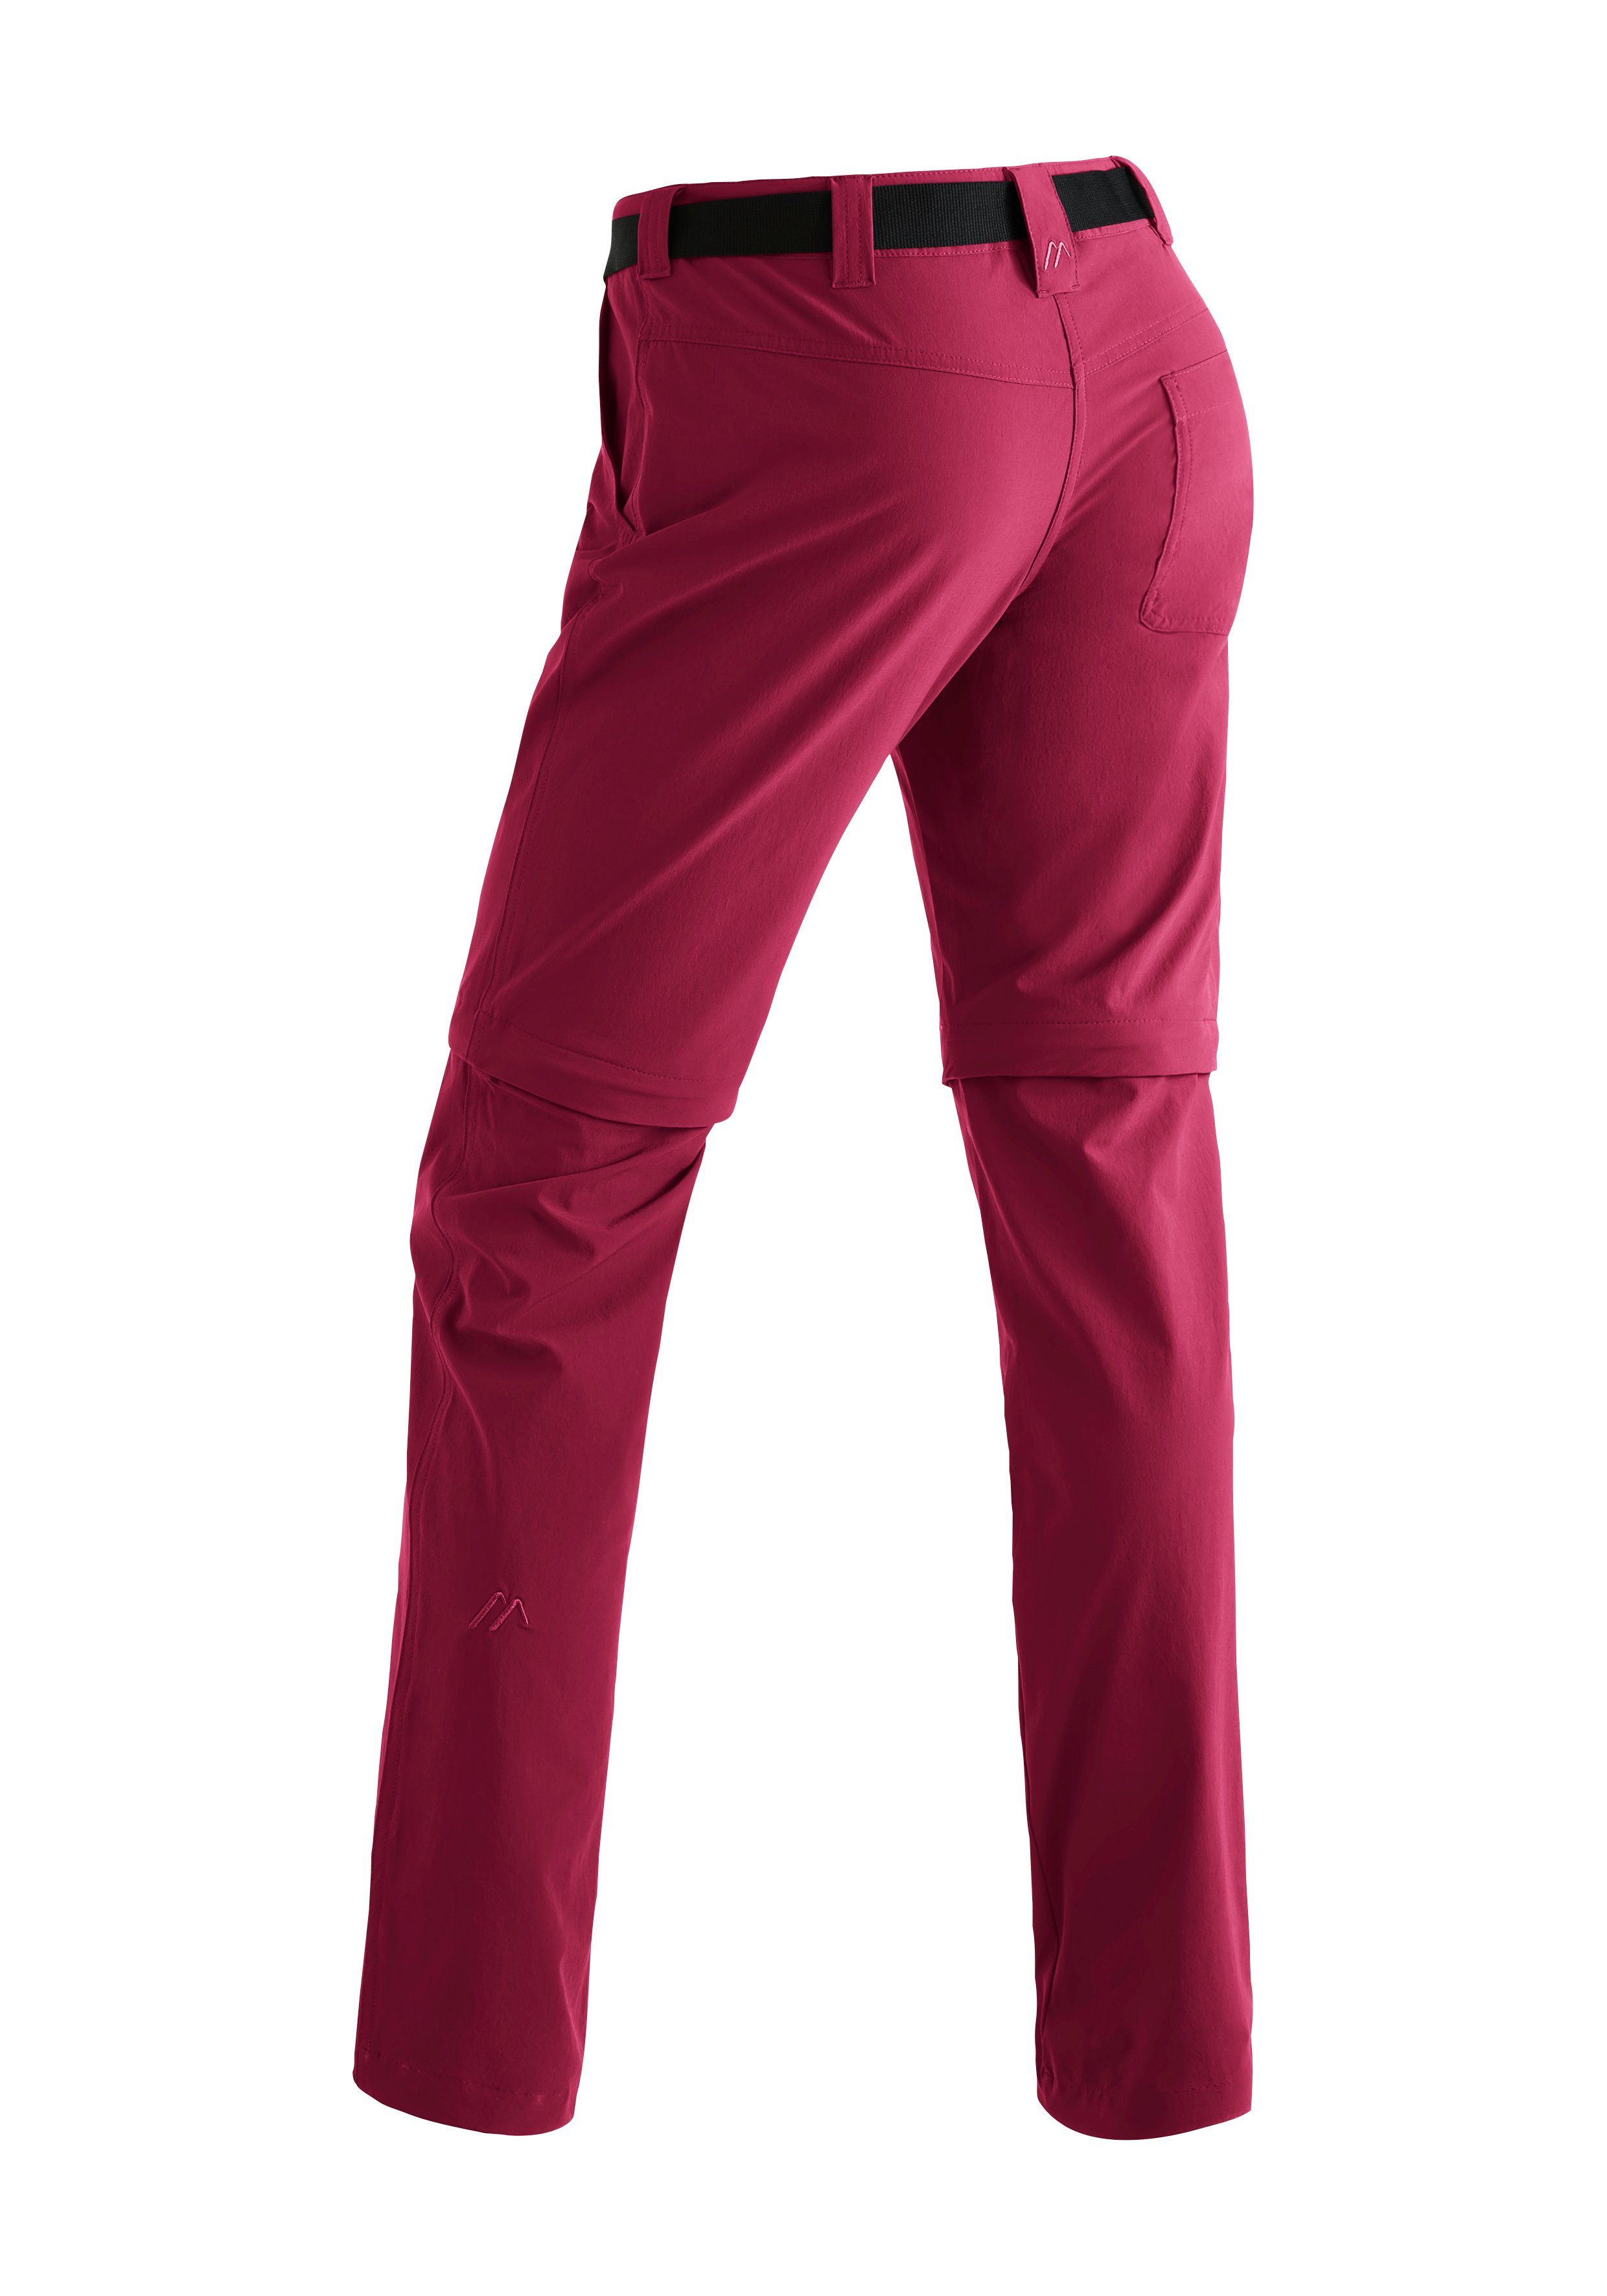 Funktionshose Sports Outdoor-Hose Damen zip purpurrot Inara Wanderhose, atmungsaktive Maier slim zipp-off